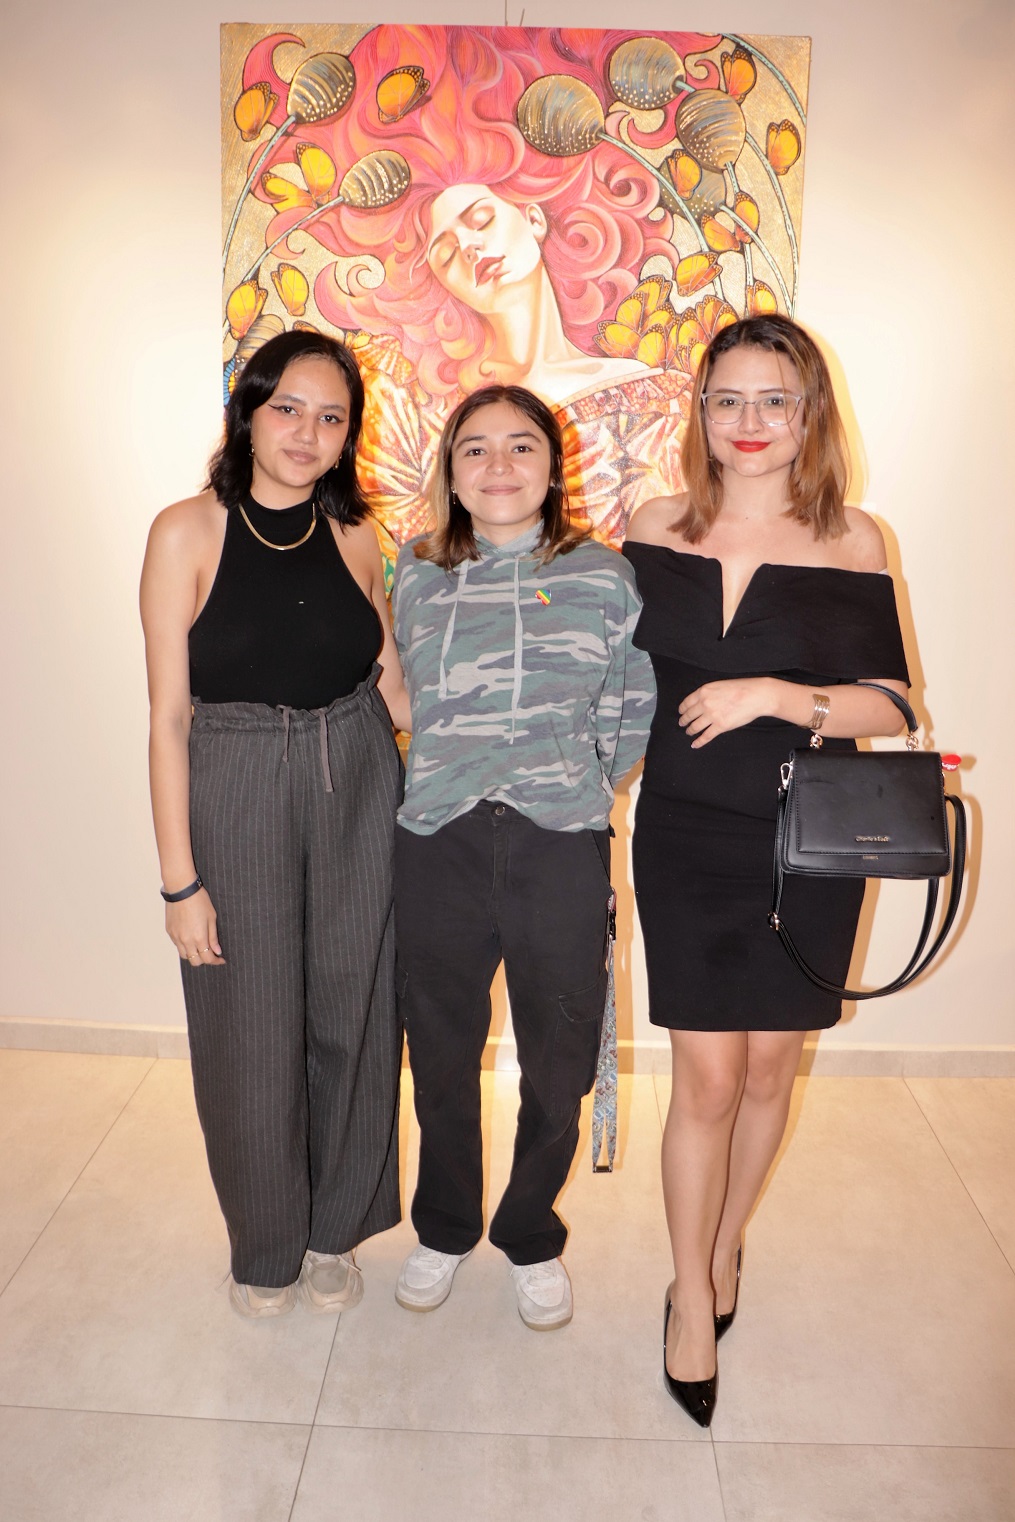 Inauguran en el Centro Cultural Sampedrano exposición pictórica colectiva “Pinceladas del alma”